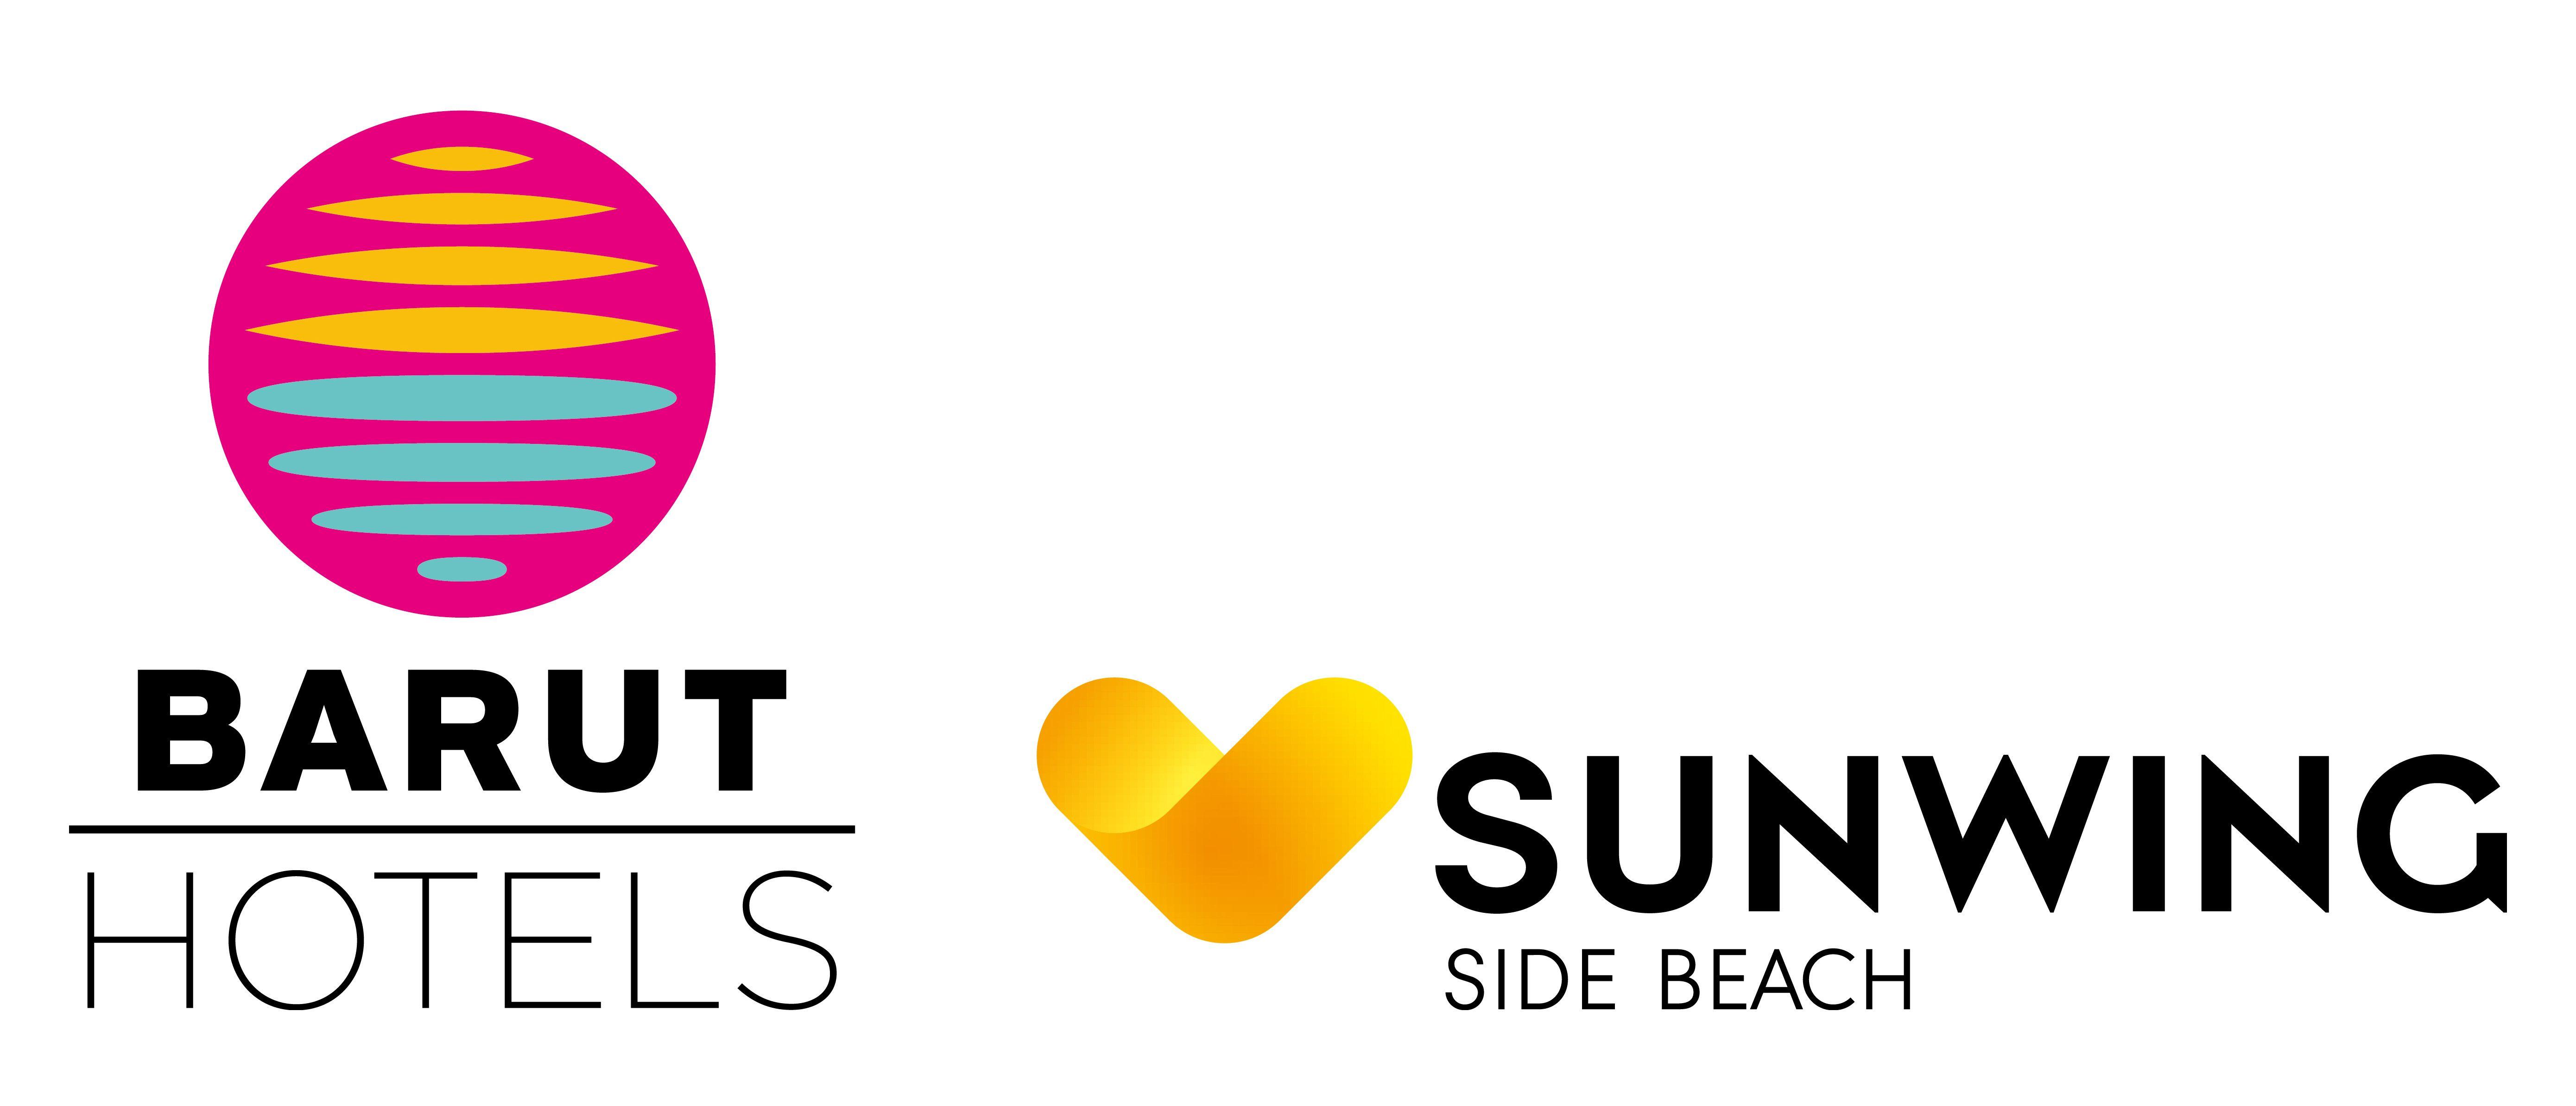 Sunwing Logo - Index of /BARUT GROUP HOTELS/SUNWING SIDE BEACH/LOGO